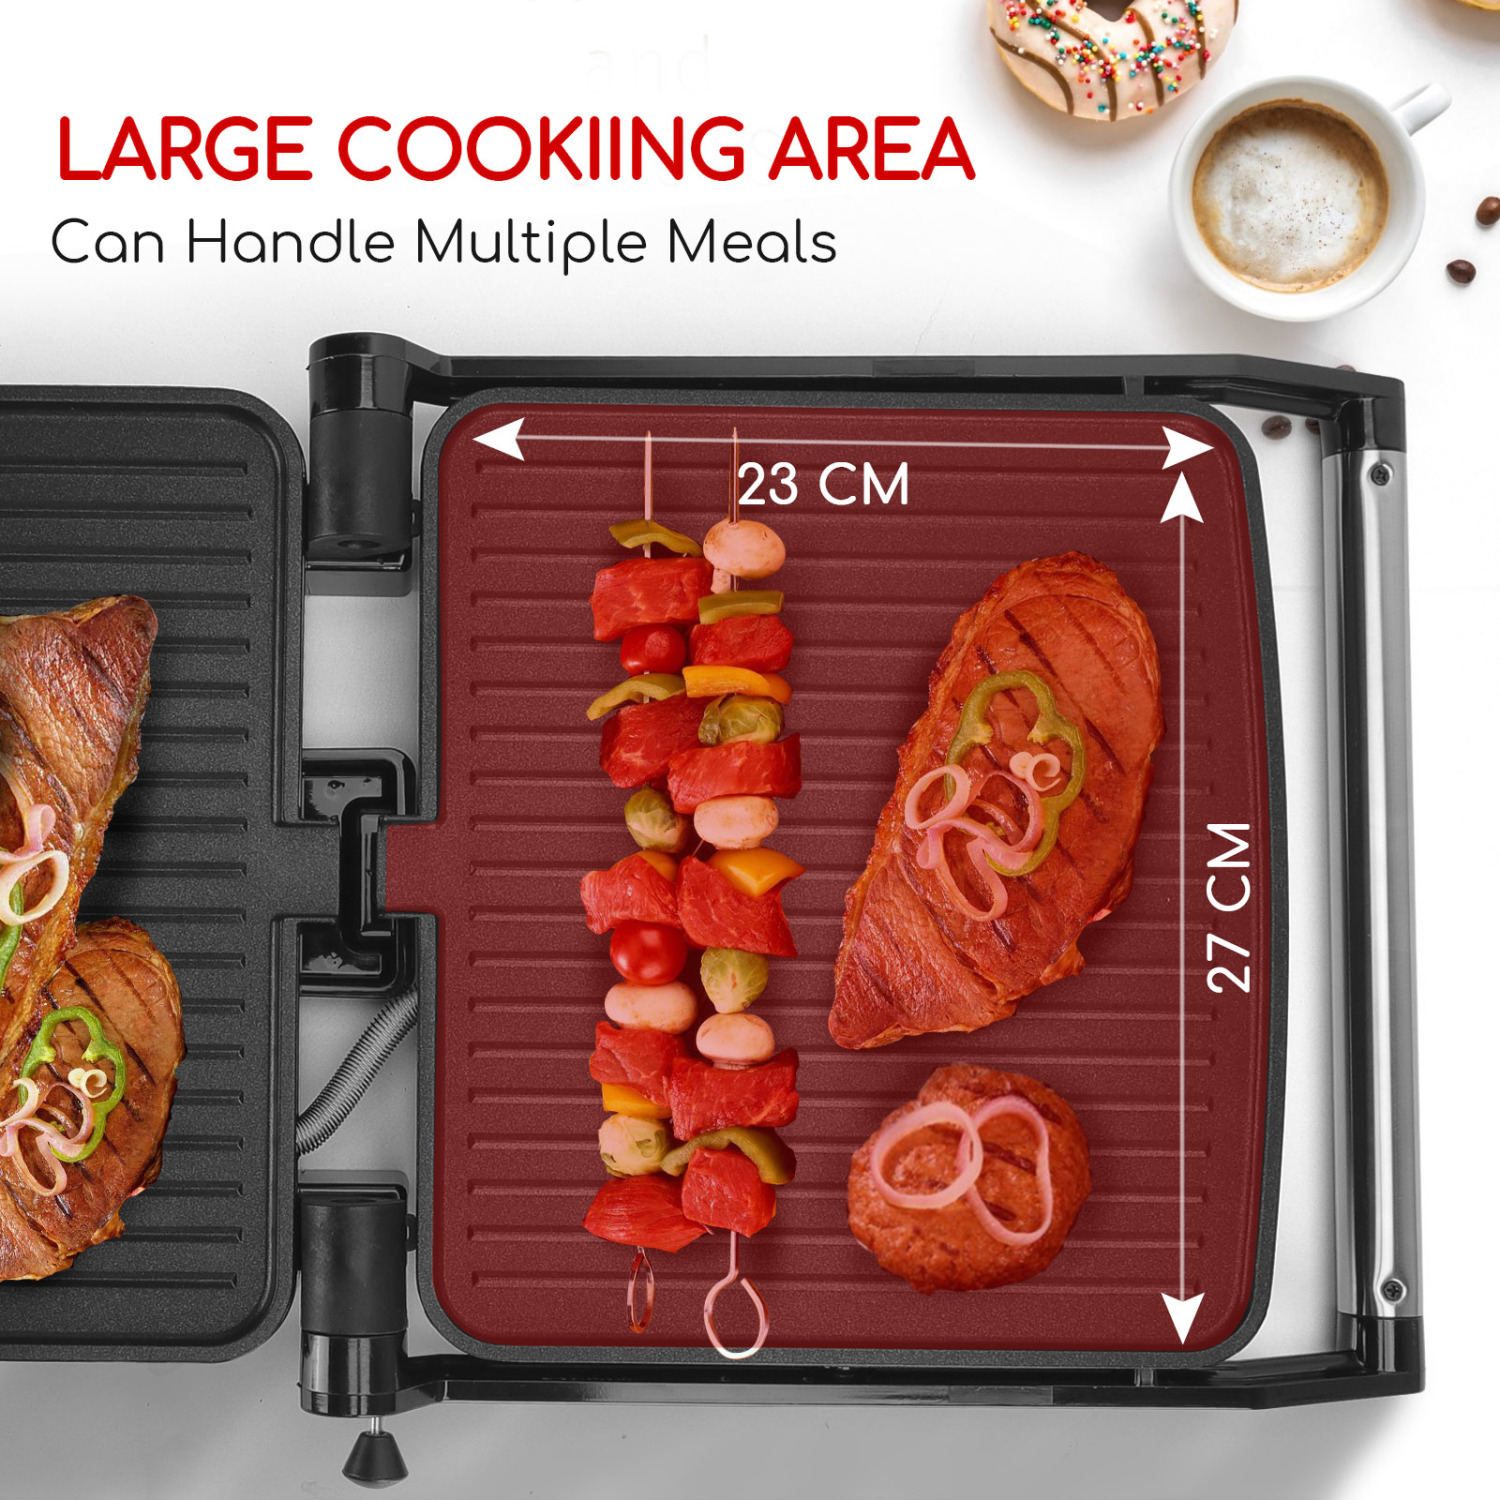 Aigostar Calore 30HHK - Grill multifonction: plancha pour viande et légumes, presse à paninis et sandwichs de 1800W avec plaques anti-adhésives, intensité réglable, et ouverture à 180º.